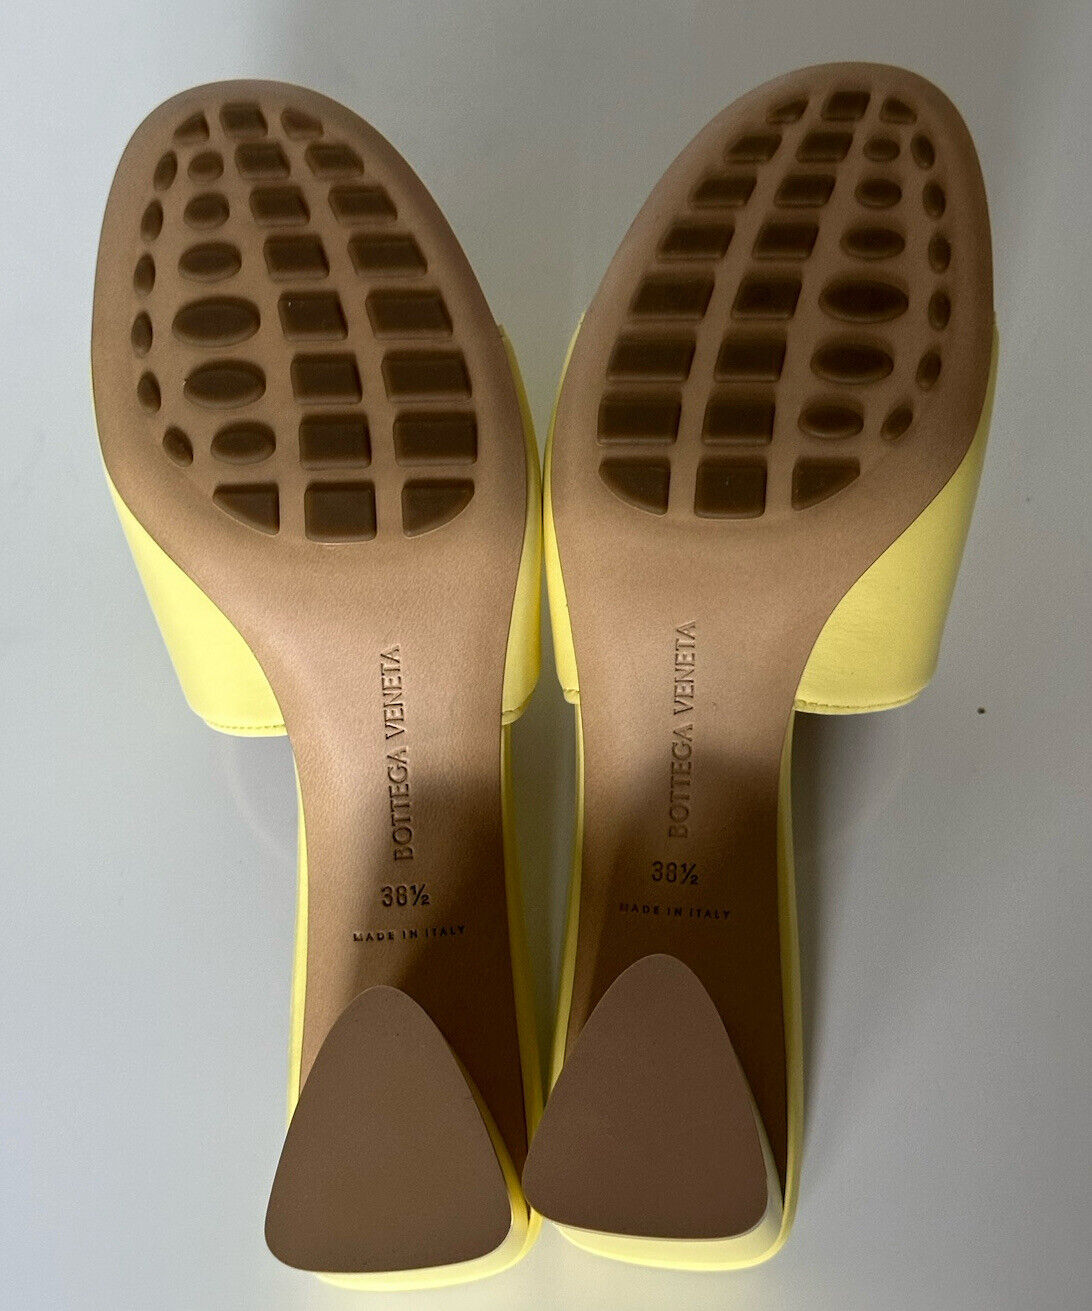 NIB $760 Bottega Veneta Calf Leather Sandals Shoes Lemonade 8.5 US 651378